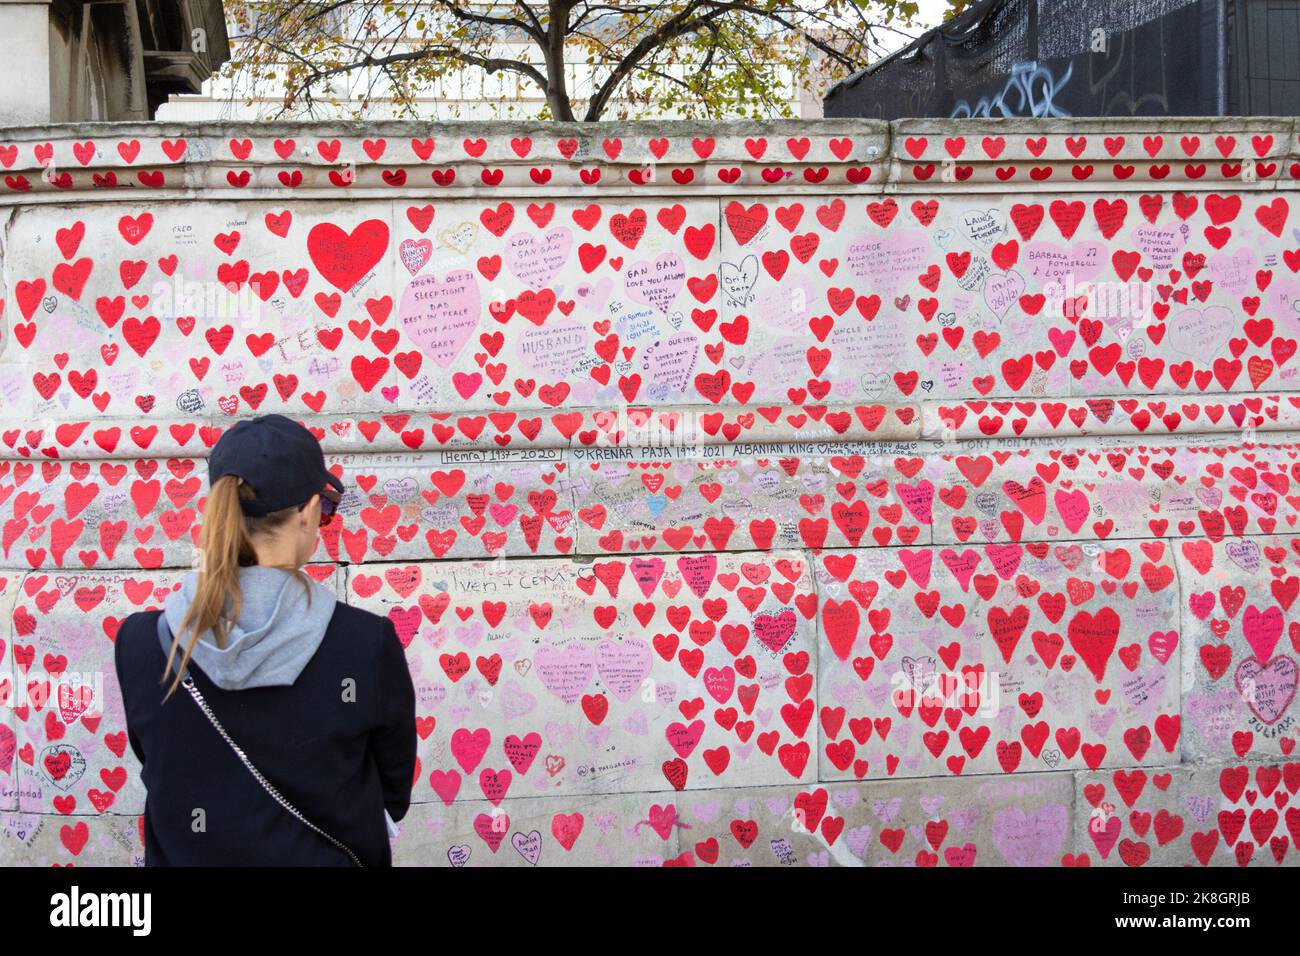 Il muro commemorativo nazionale con una donna che guarda le migliaia di cuori e messaggi, londra, regno unito Foto Stock